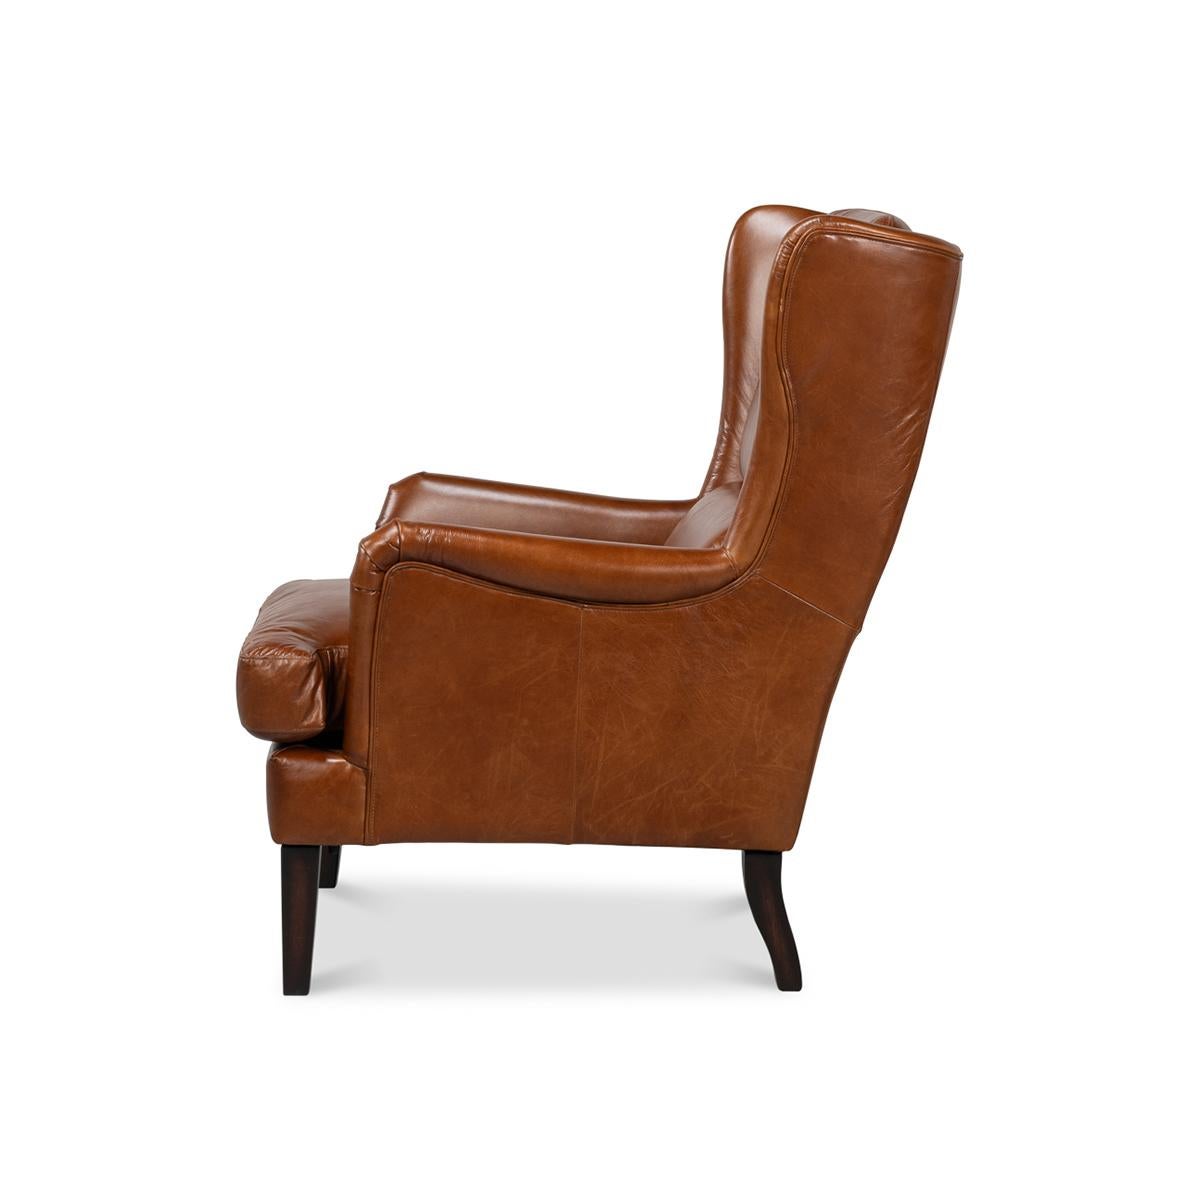 Aus braunem, traditionell genarbtem Vintage-Havanna-Leder, mit hoher, klassischer Flügelrückenlehne und kastenförmigem Sitzkissen auf konischen Beinen.

Abmessungen: 28